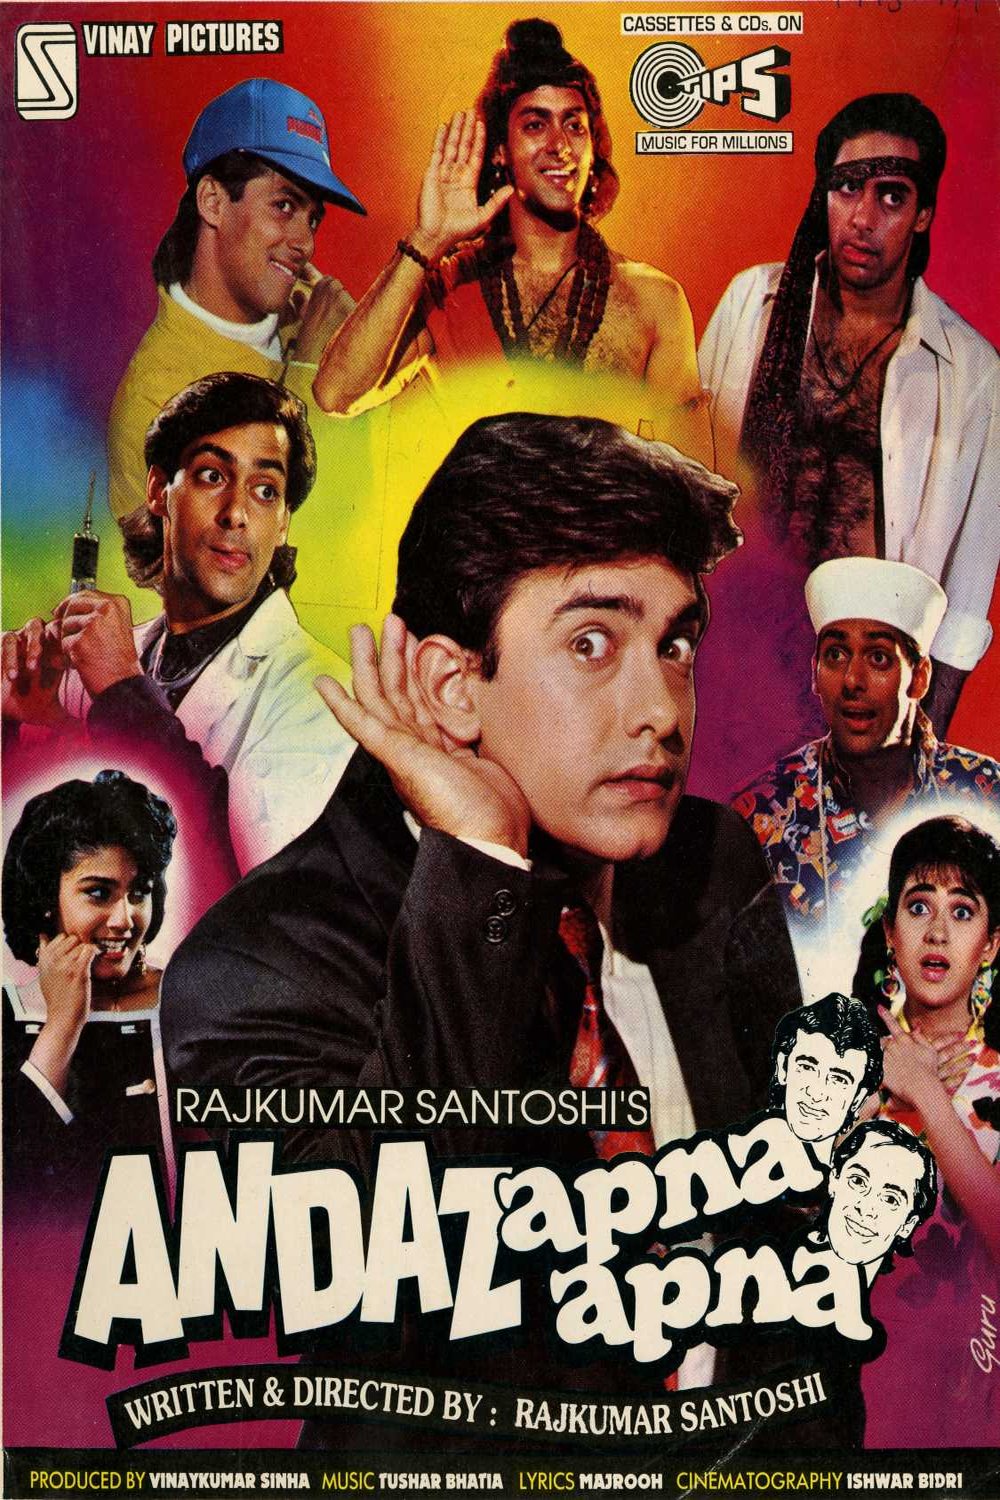 Poster of the movie Andaz Apna Apna